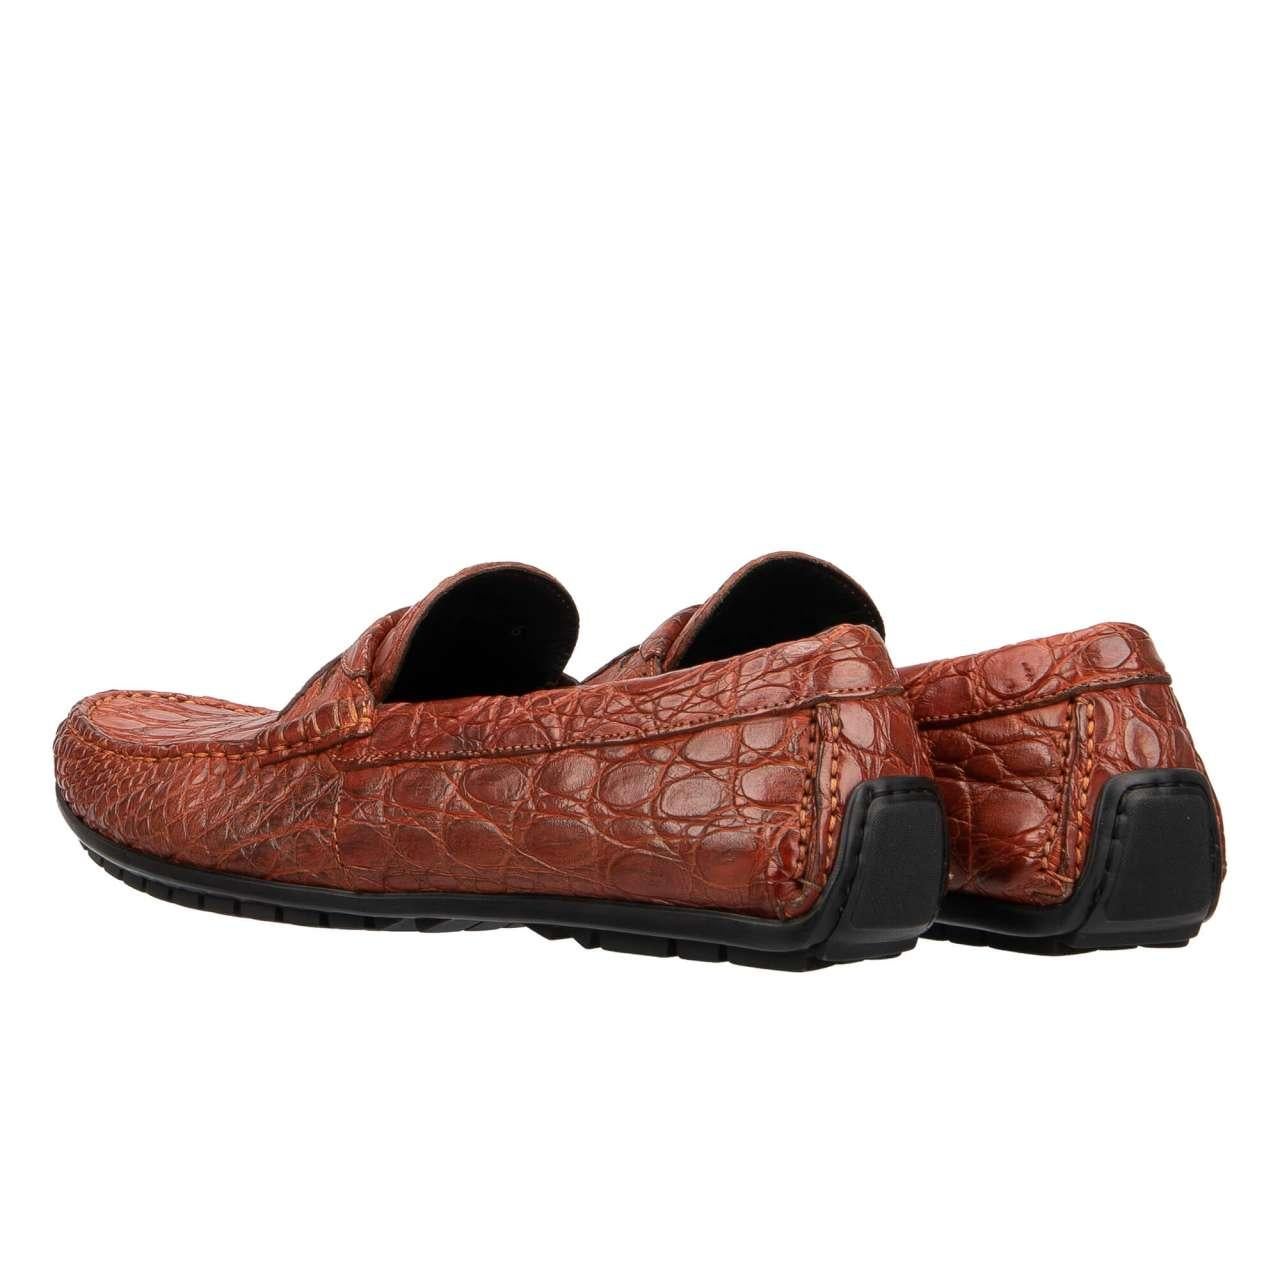 Men's Dolce & Gabbana - Caiman Leather Moccasins Loafer Shoes RAGUSA Orange EUR 40 For Sale